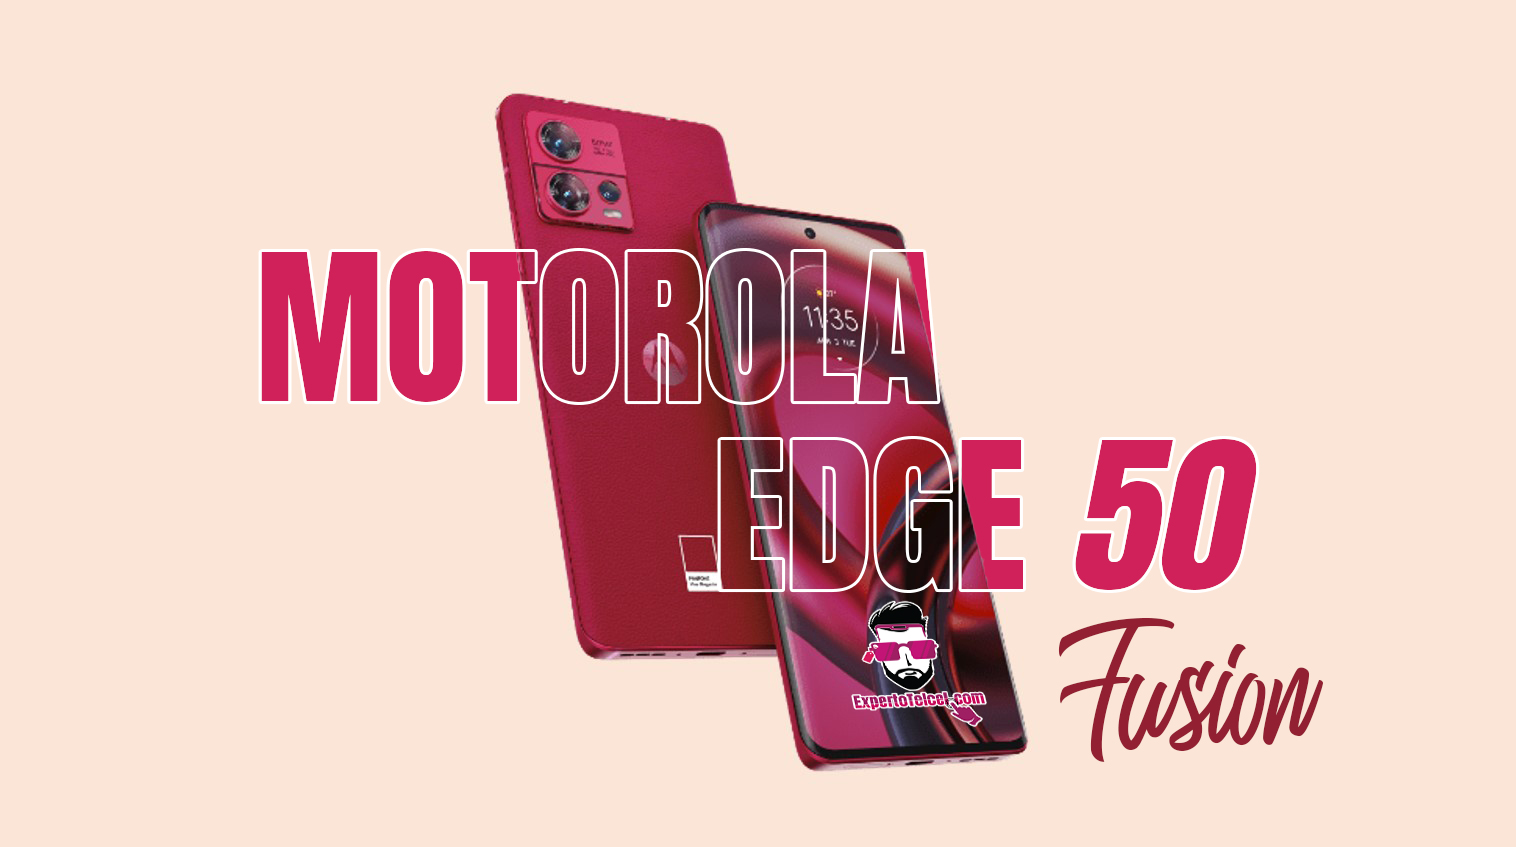 motorola-edge-30-fusion-viva-magenta-featured